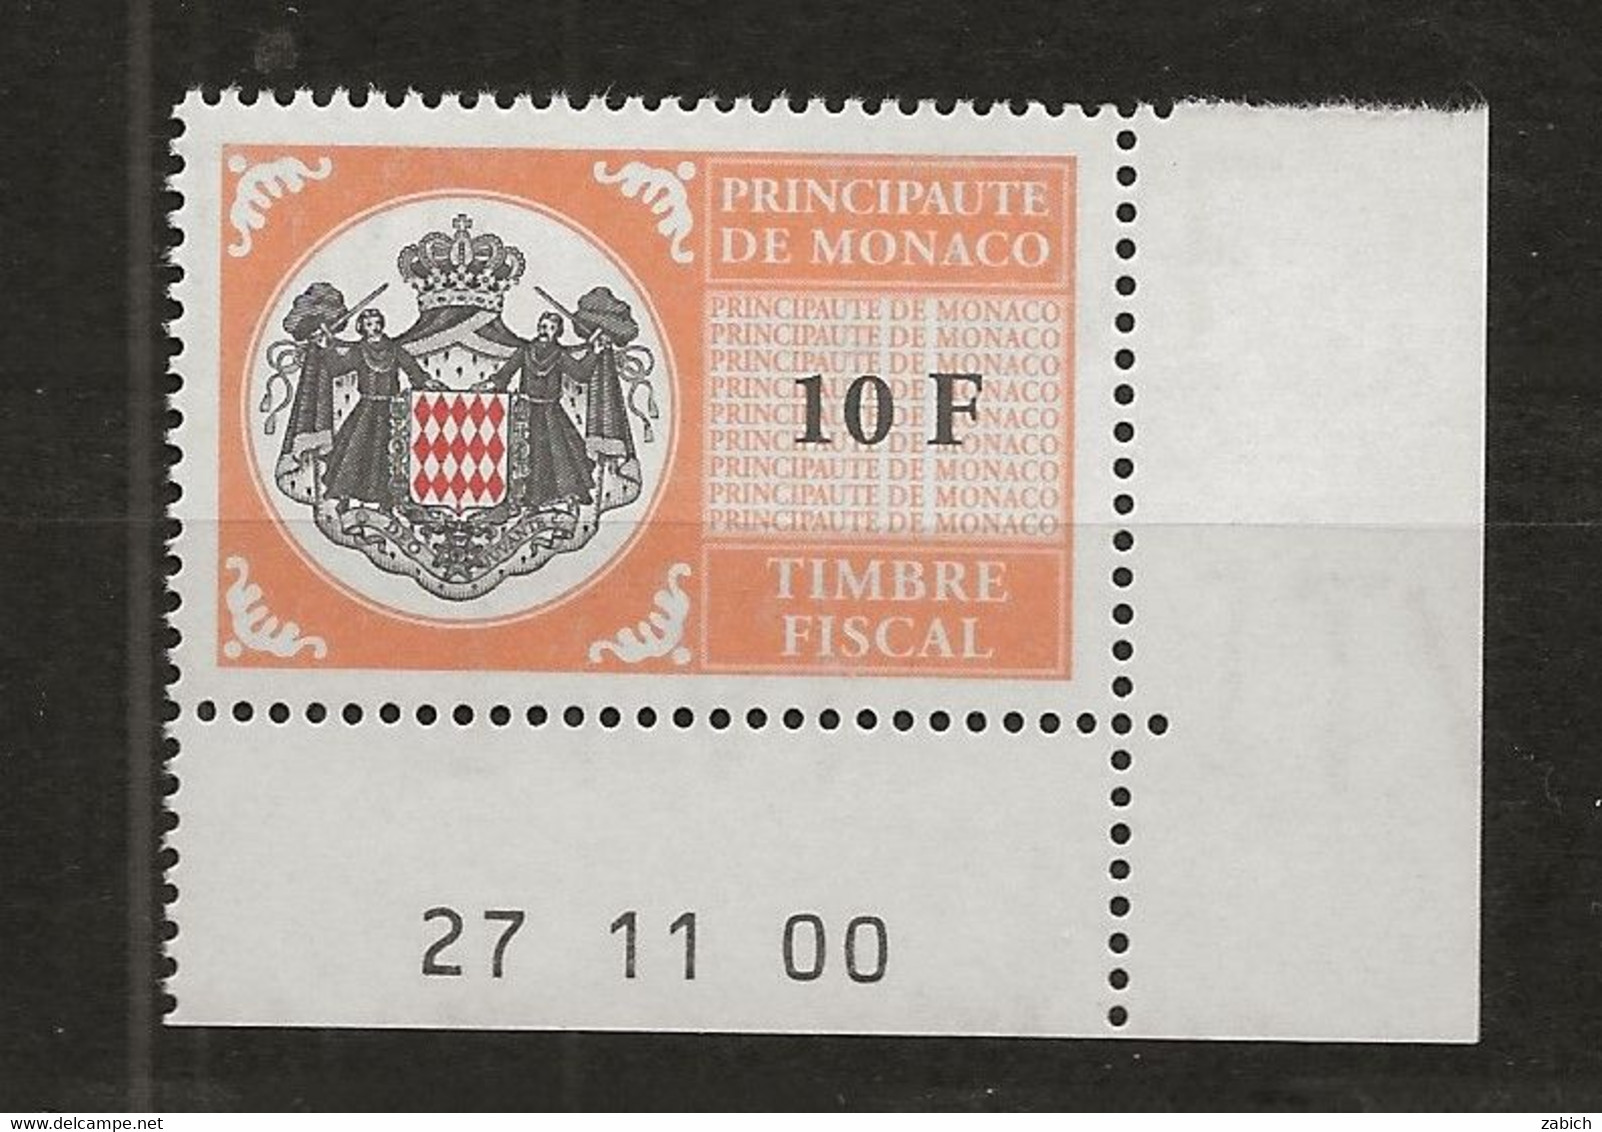 TIMBRES FISCAUX DE MONACO SERIE UNIFIEE N°102 10F Orange  Coin Daté Du 27 11 00 Neuf Gomme Mnh (**) - Fiscali